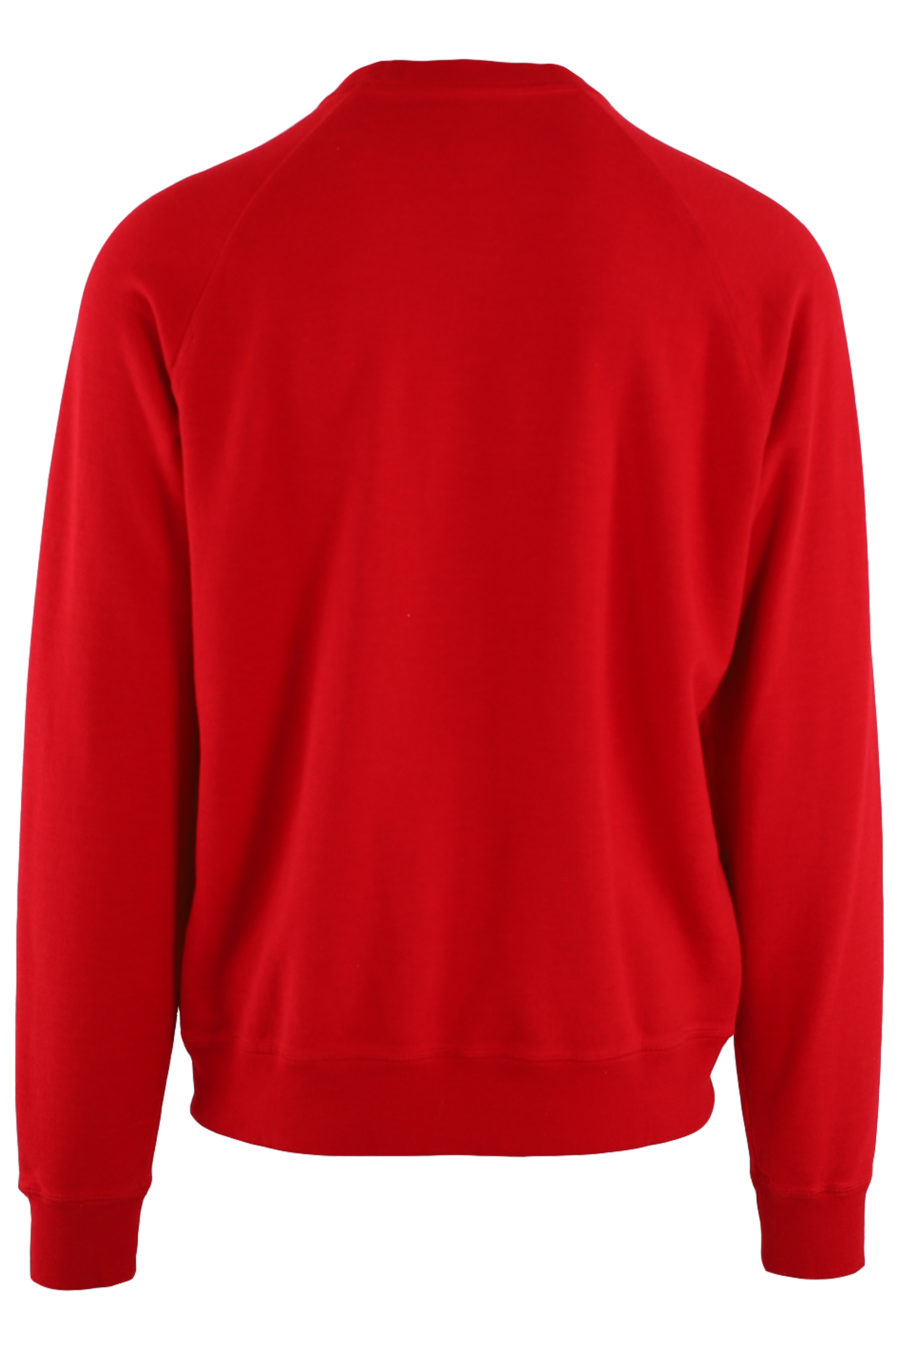 Rotes Sweatshirt mit weißem Logo in der Mitte - IMG 8765